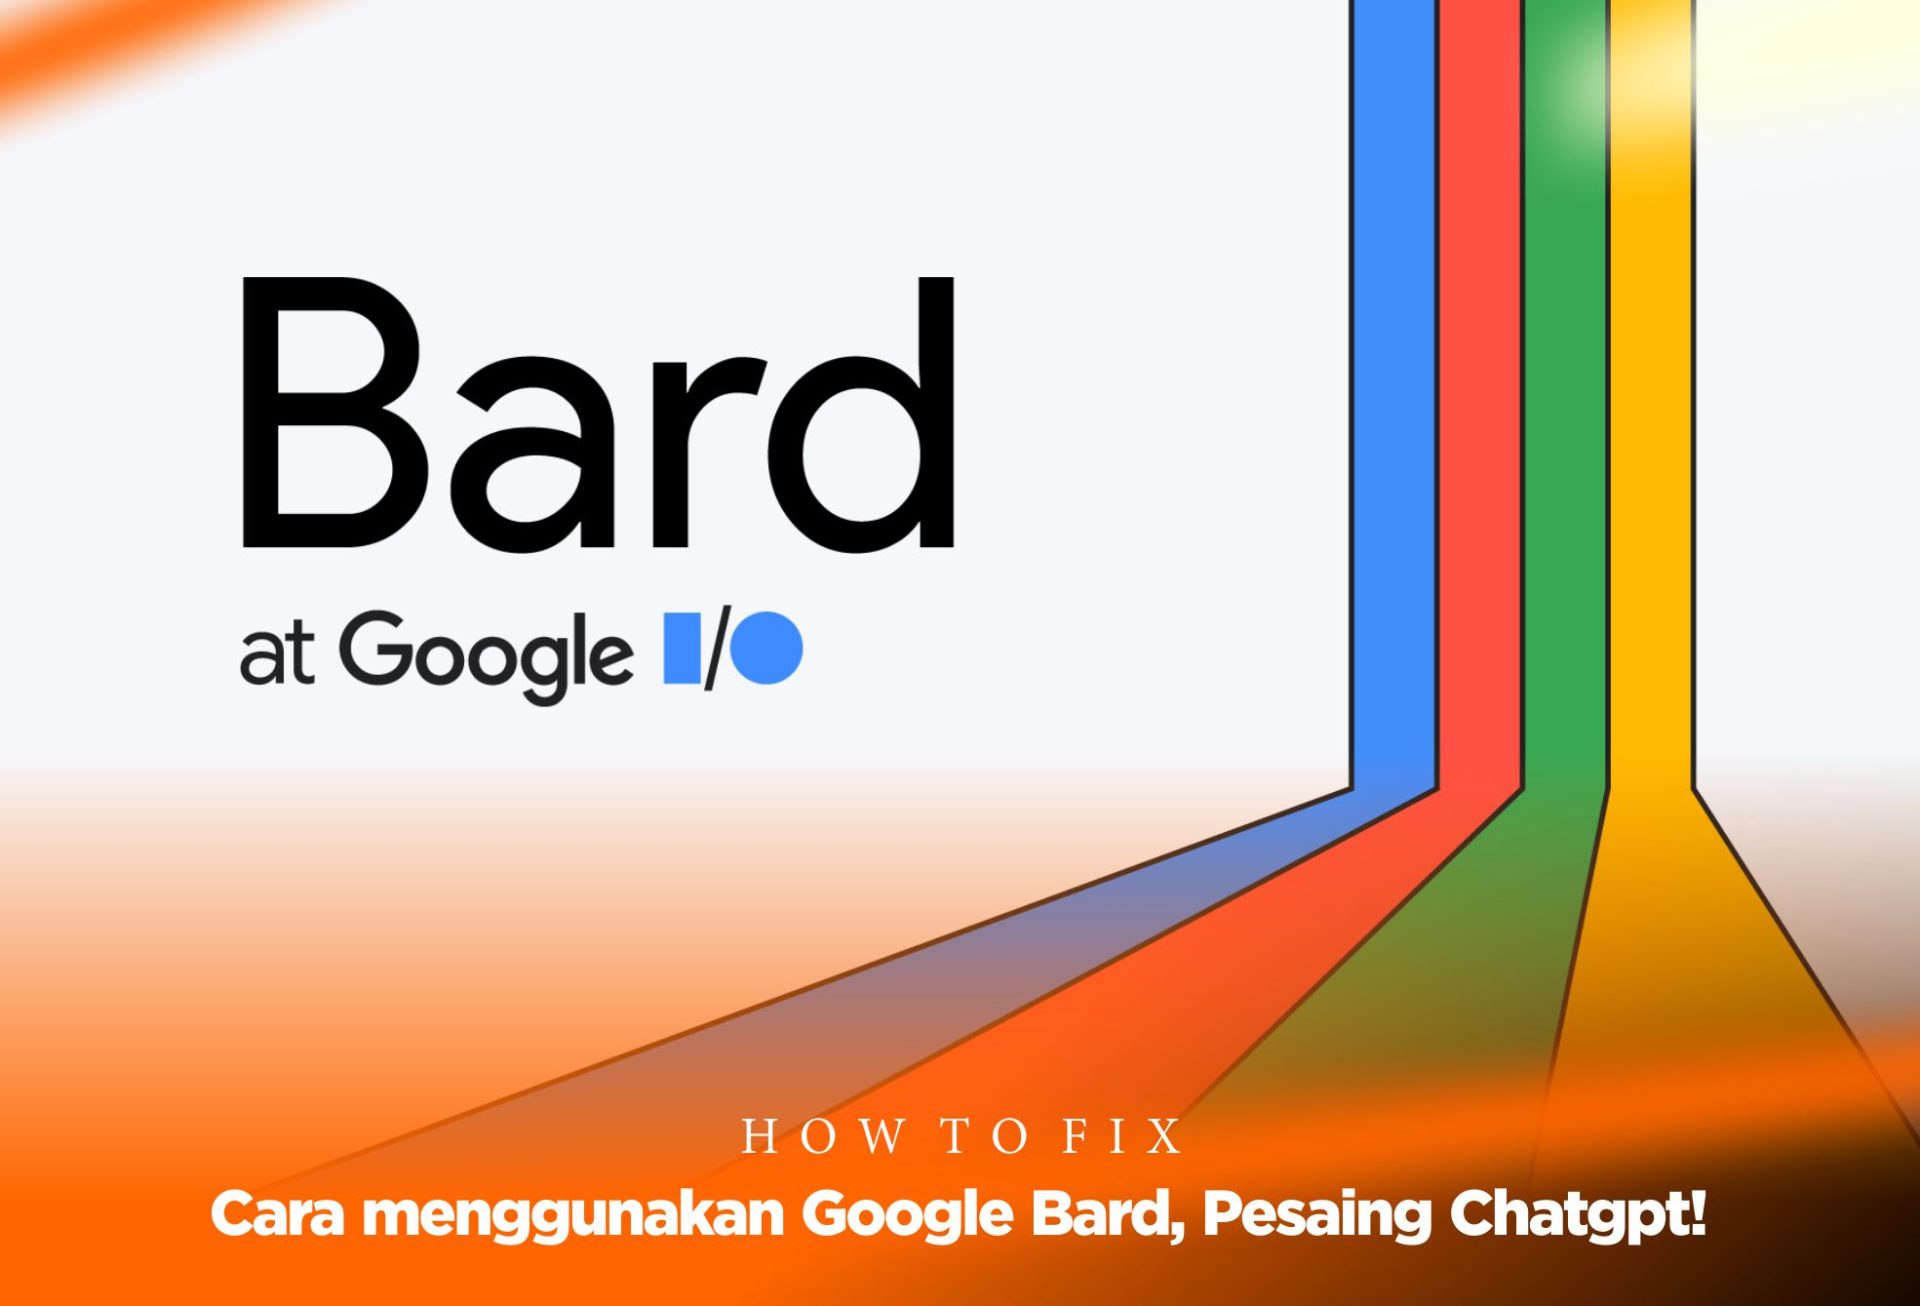 Cara menggunakan Google Bard, Pesaing Chatgpt!